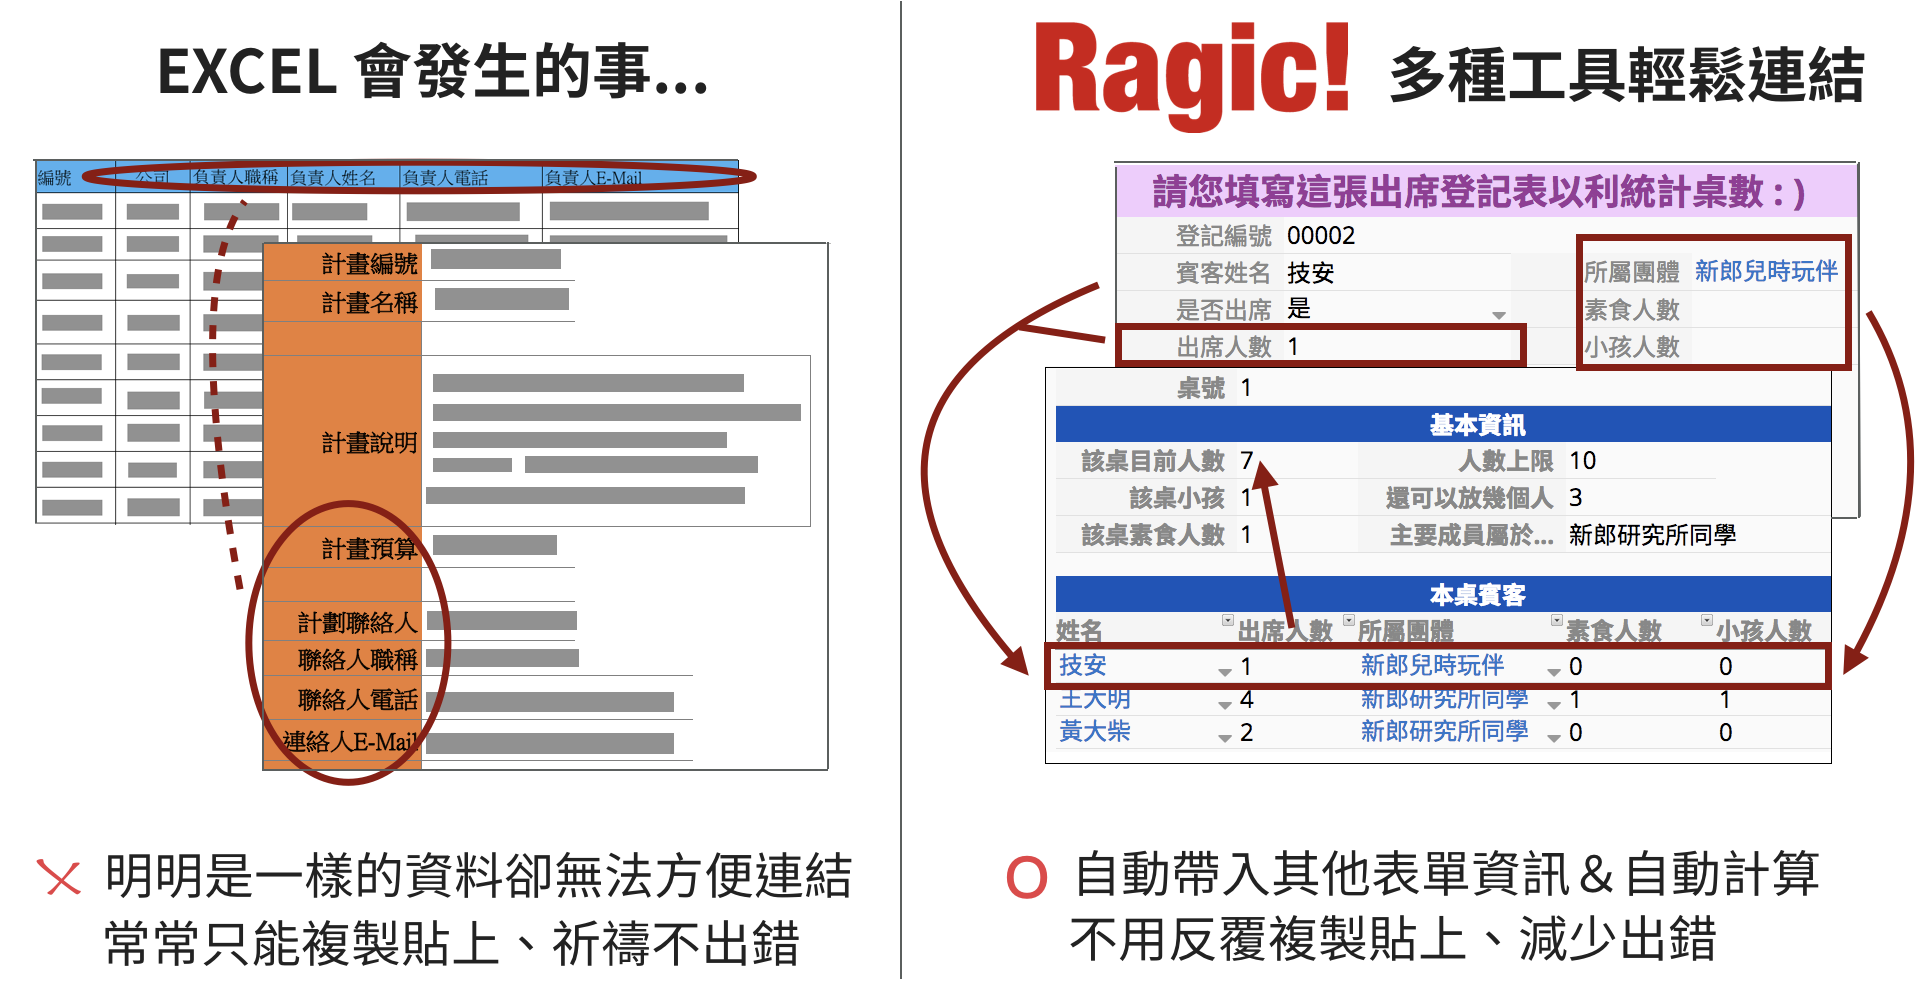 Excel 經常明明是一樣的資料卻無法方便連結，只能複製貼上祈禱不出錯；在 Ragic 有多種工具輕鬆連結表單，自動帶入其他表單資訊，自動計算，減少出錯